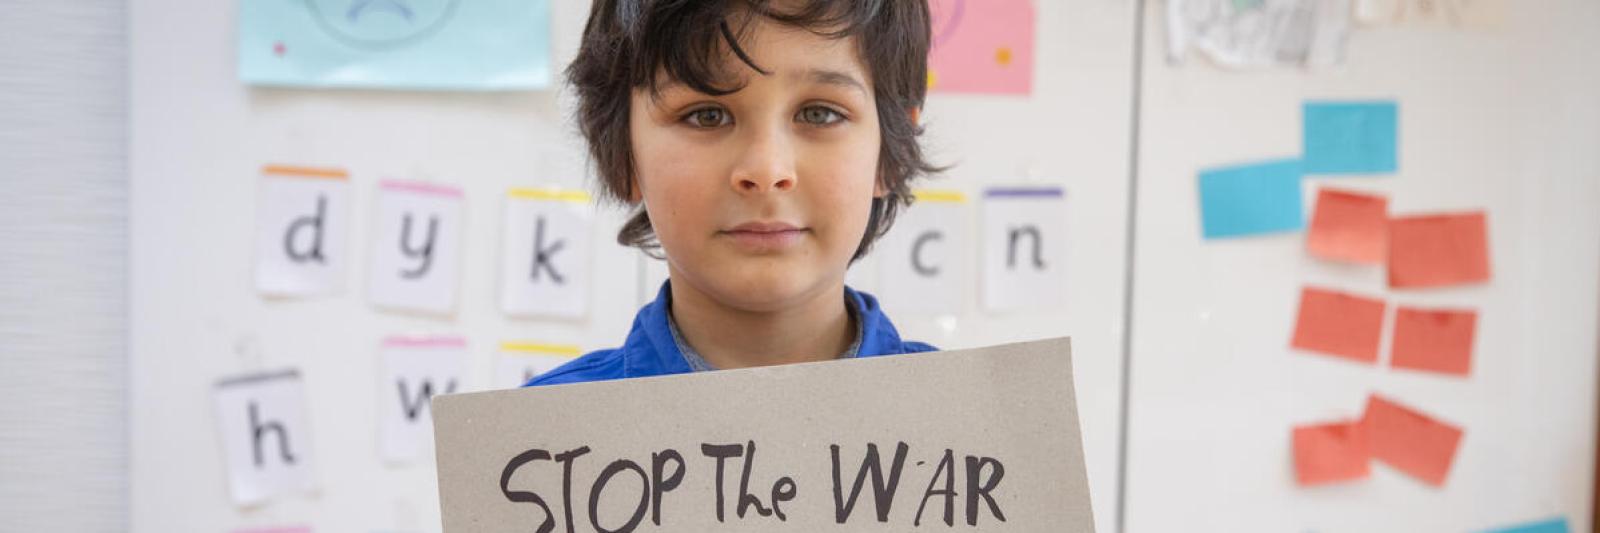 Bambino con cartello "Stop the War on children"